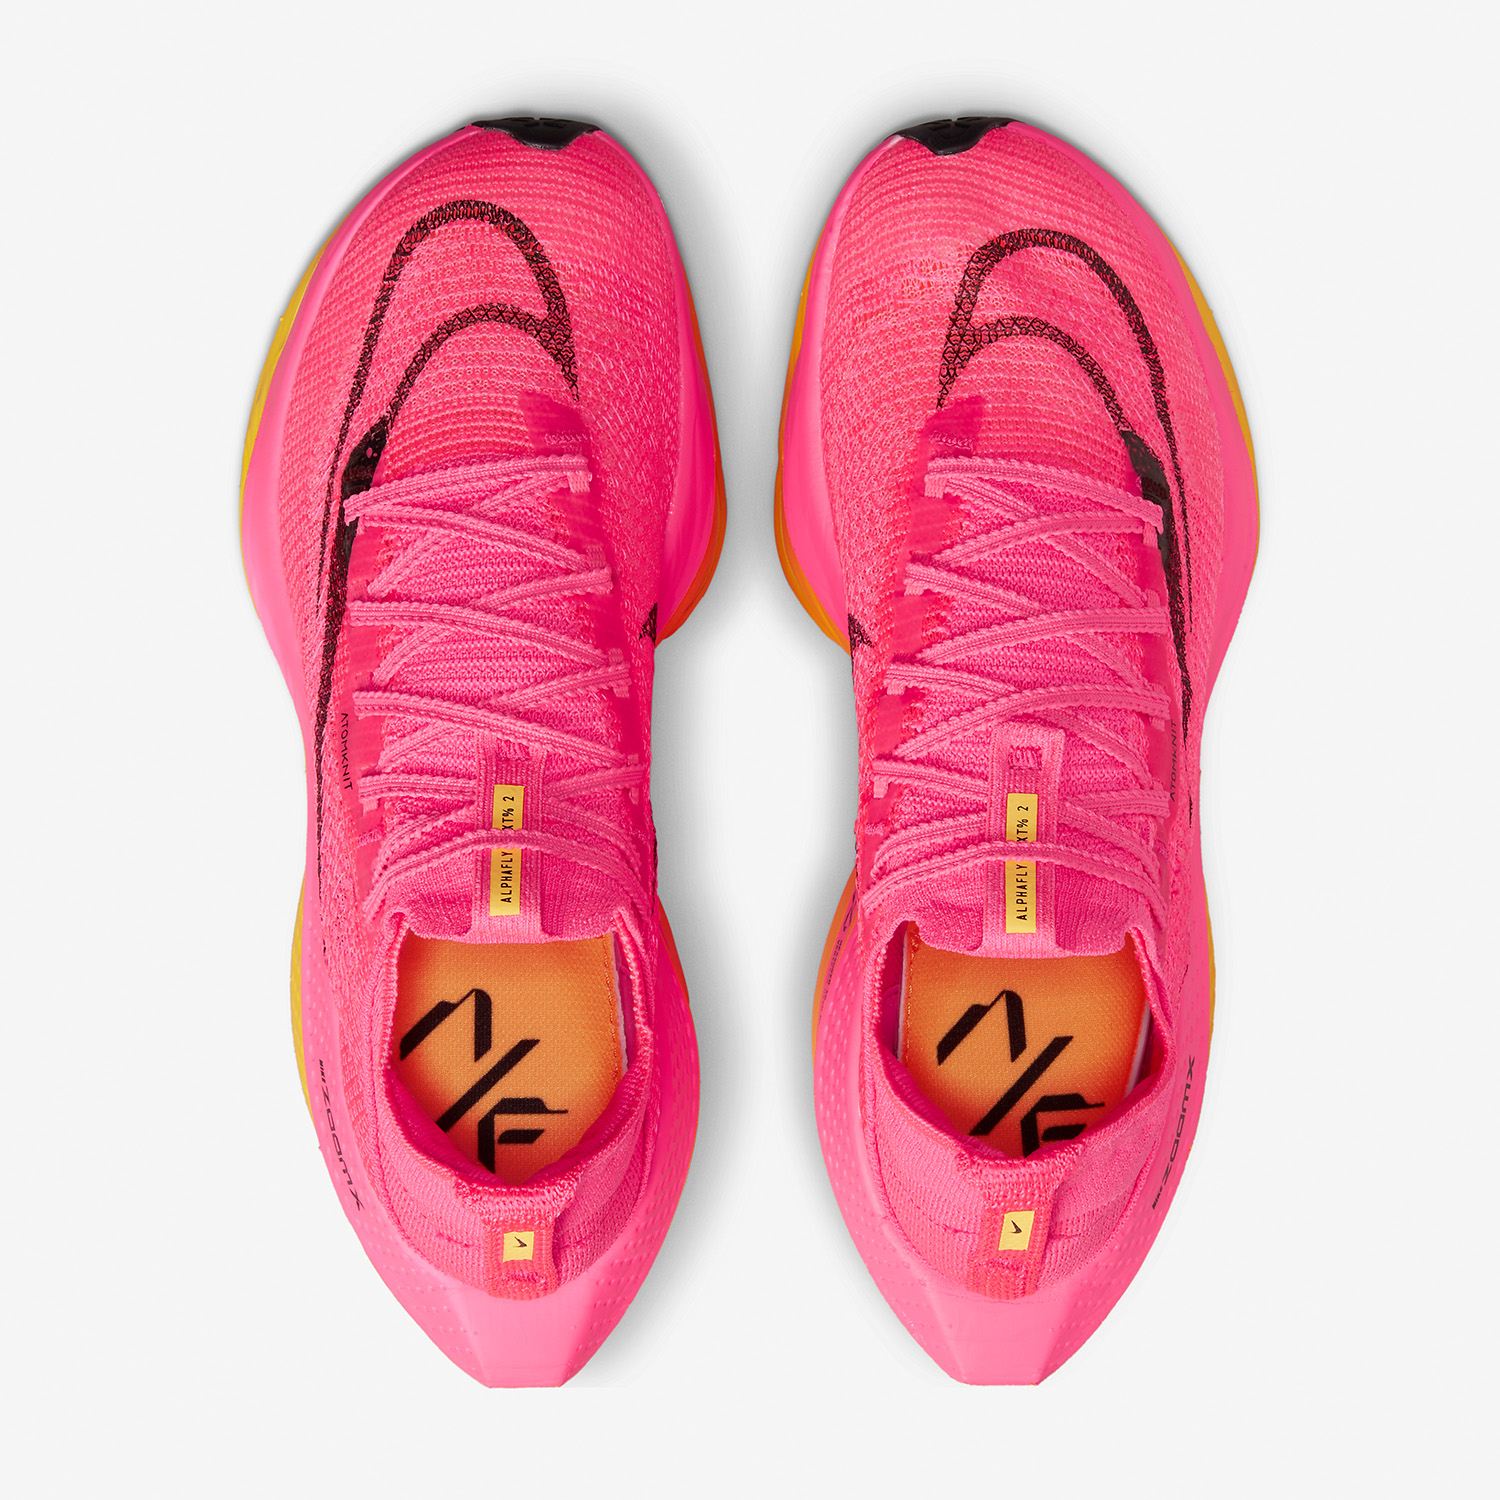 Nike Air Alphafly Next% 2 Women's Running Shoes Hyper Pink